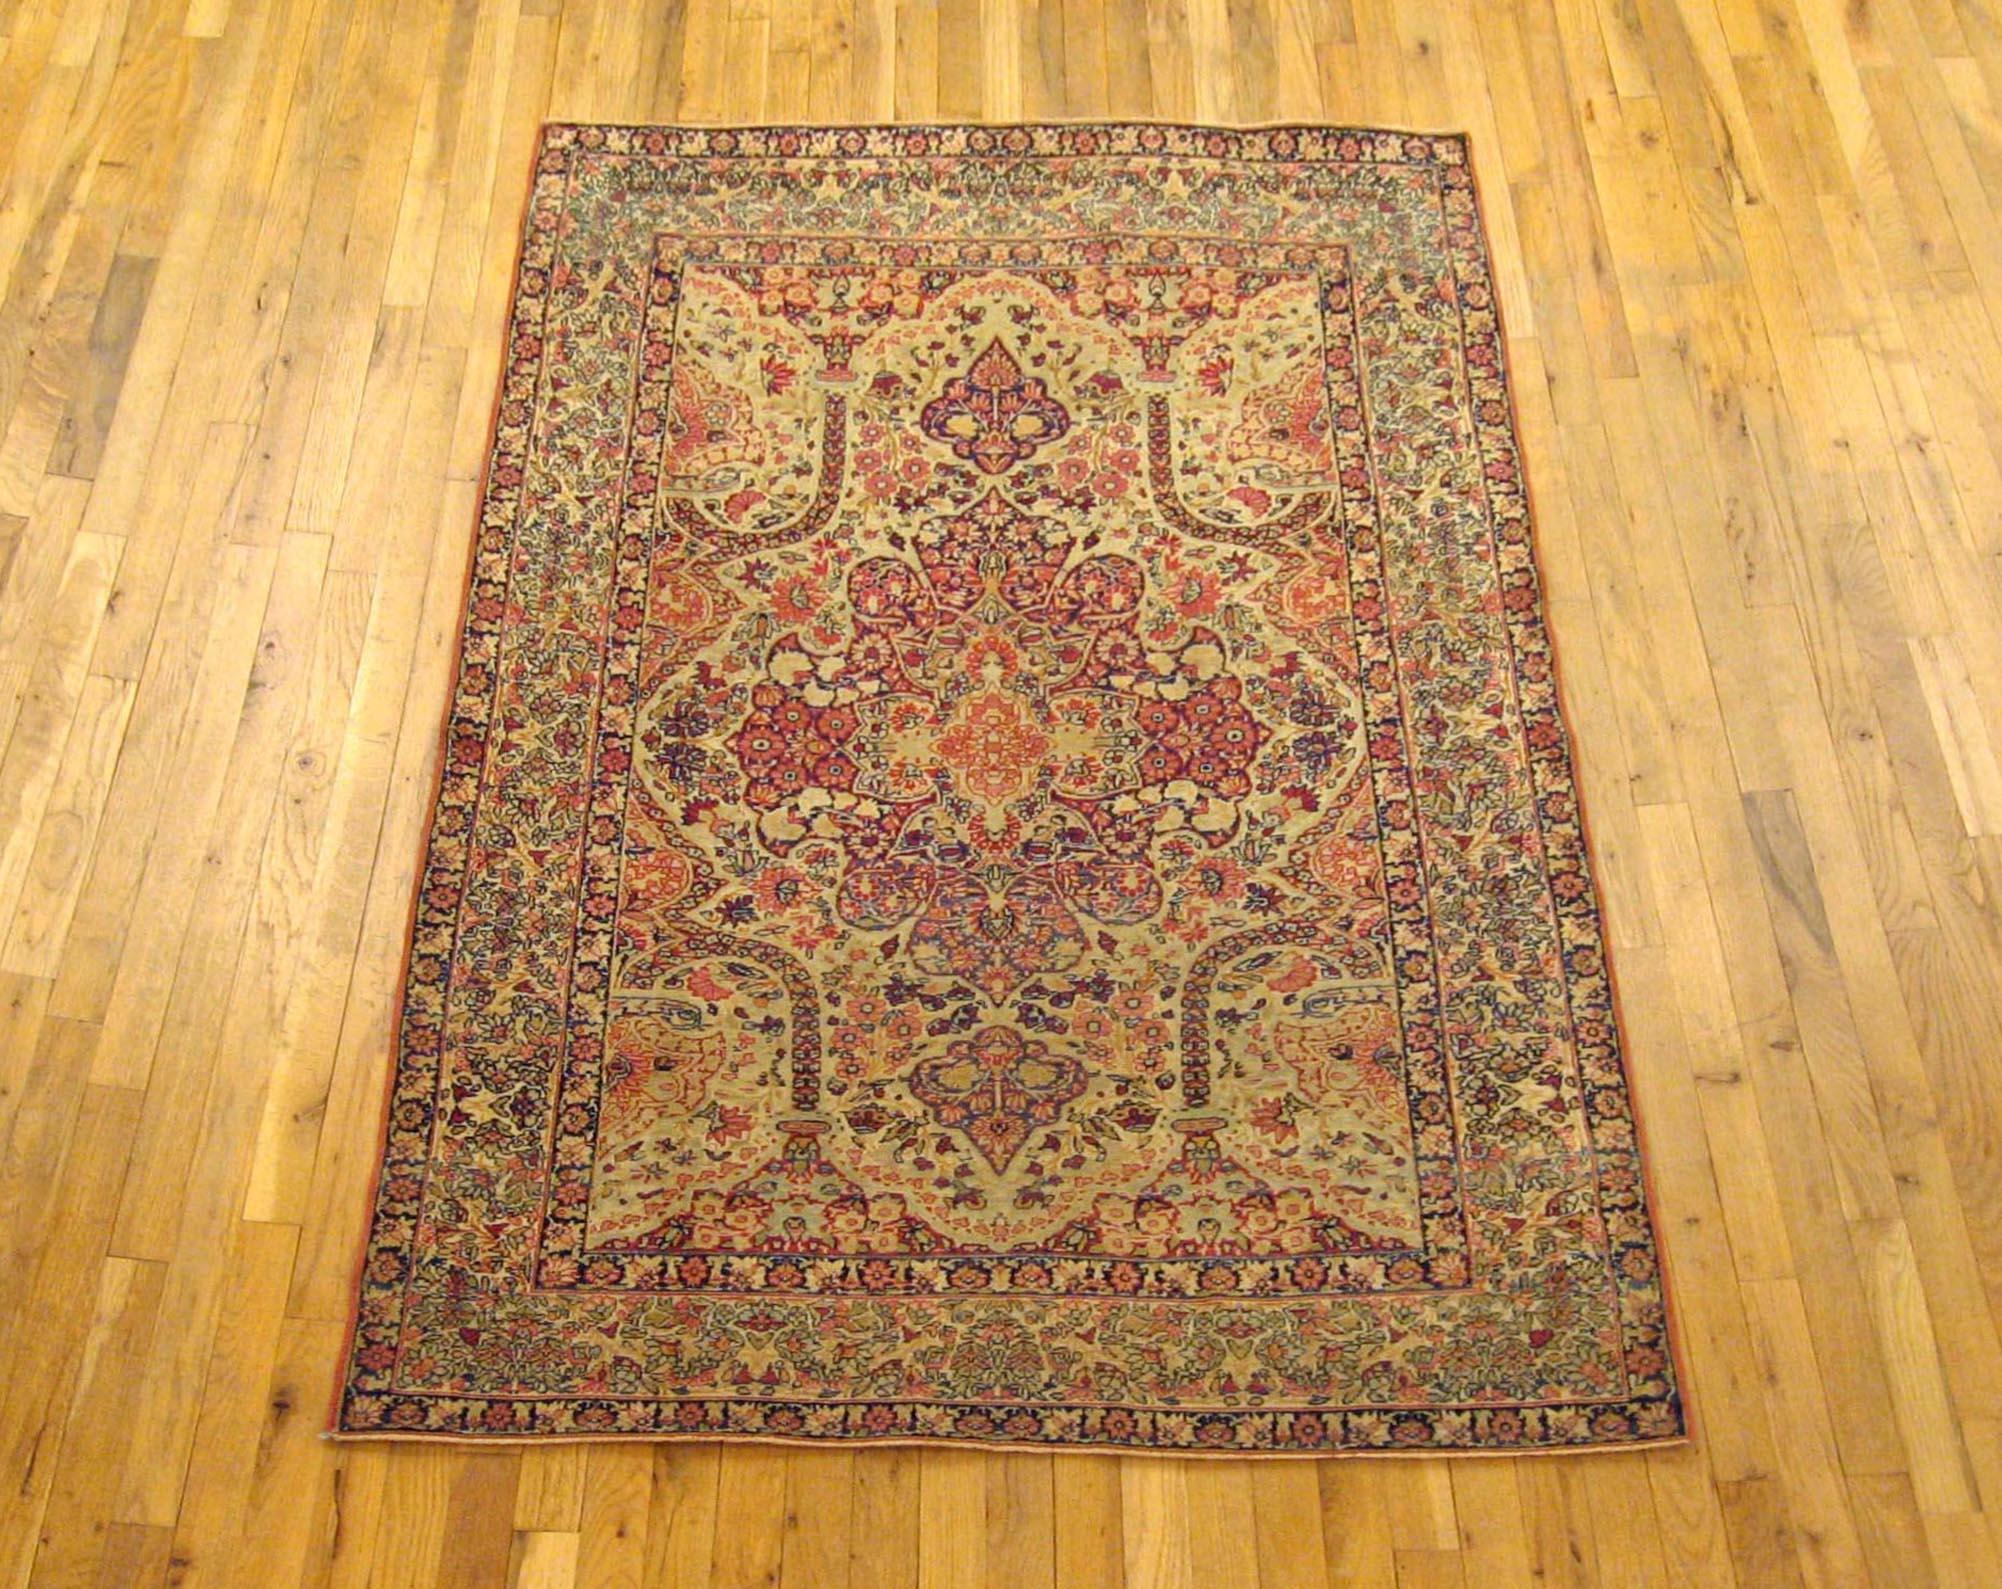 Antique Persian Lavar Oriental carpet, Small Size, circa 1890

An antique Persian Lavar oriental carpet, size: 6'2